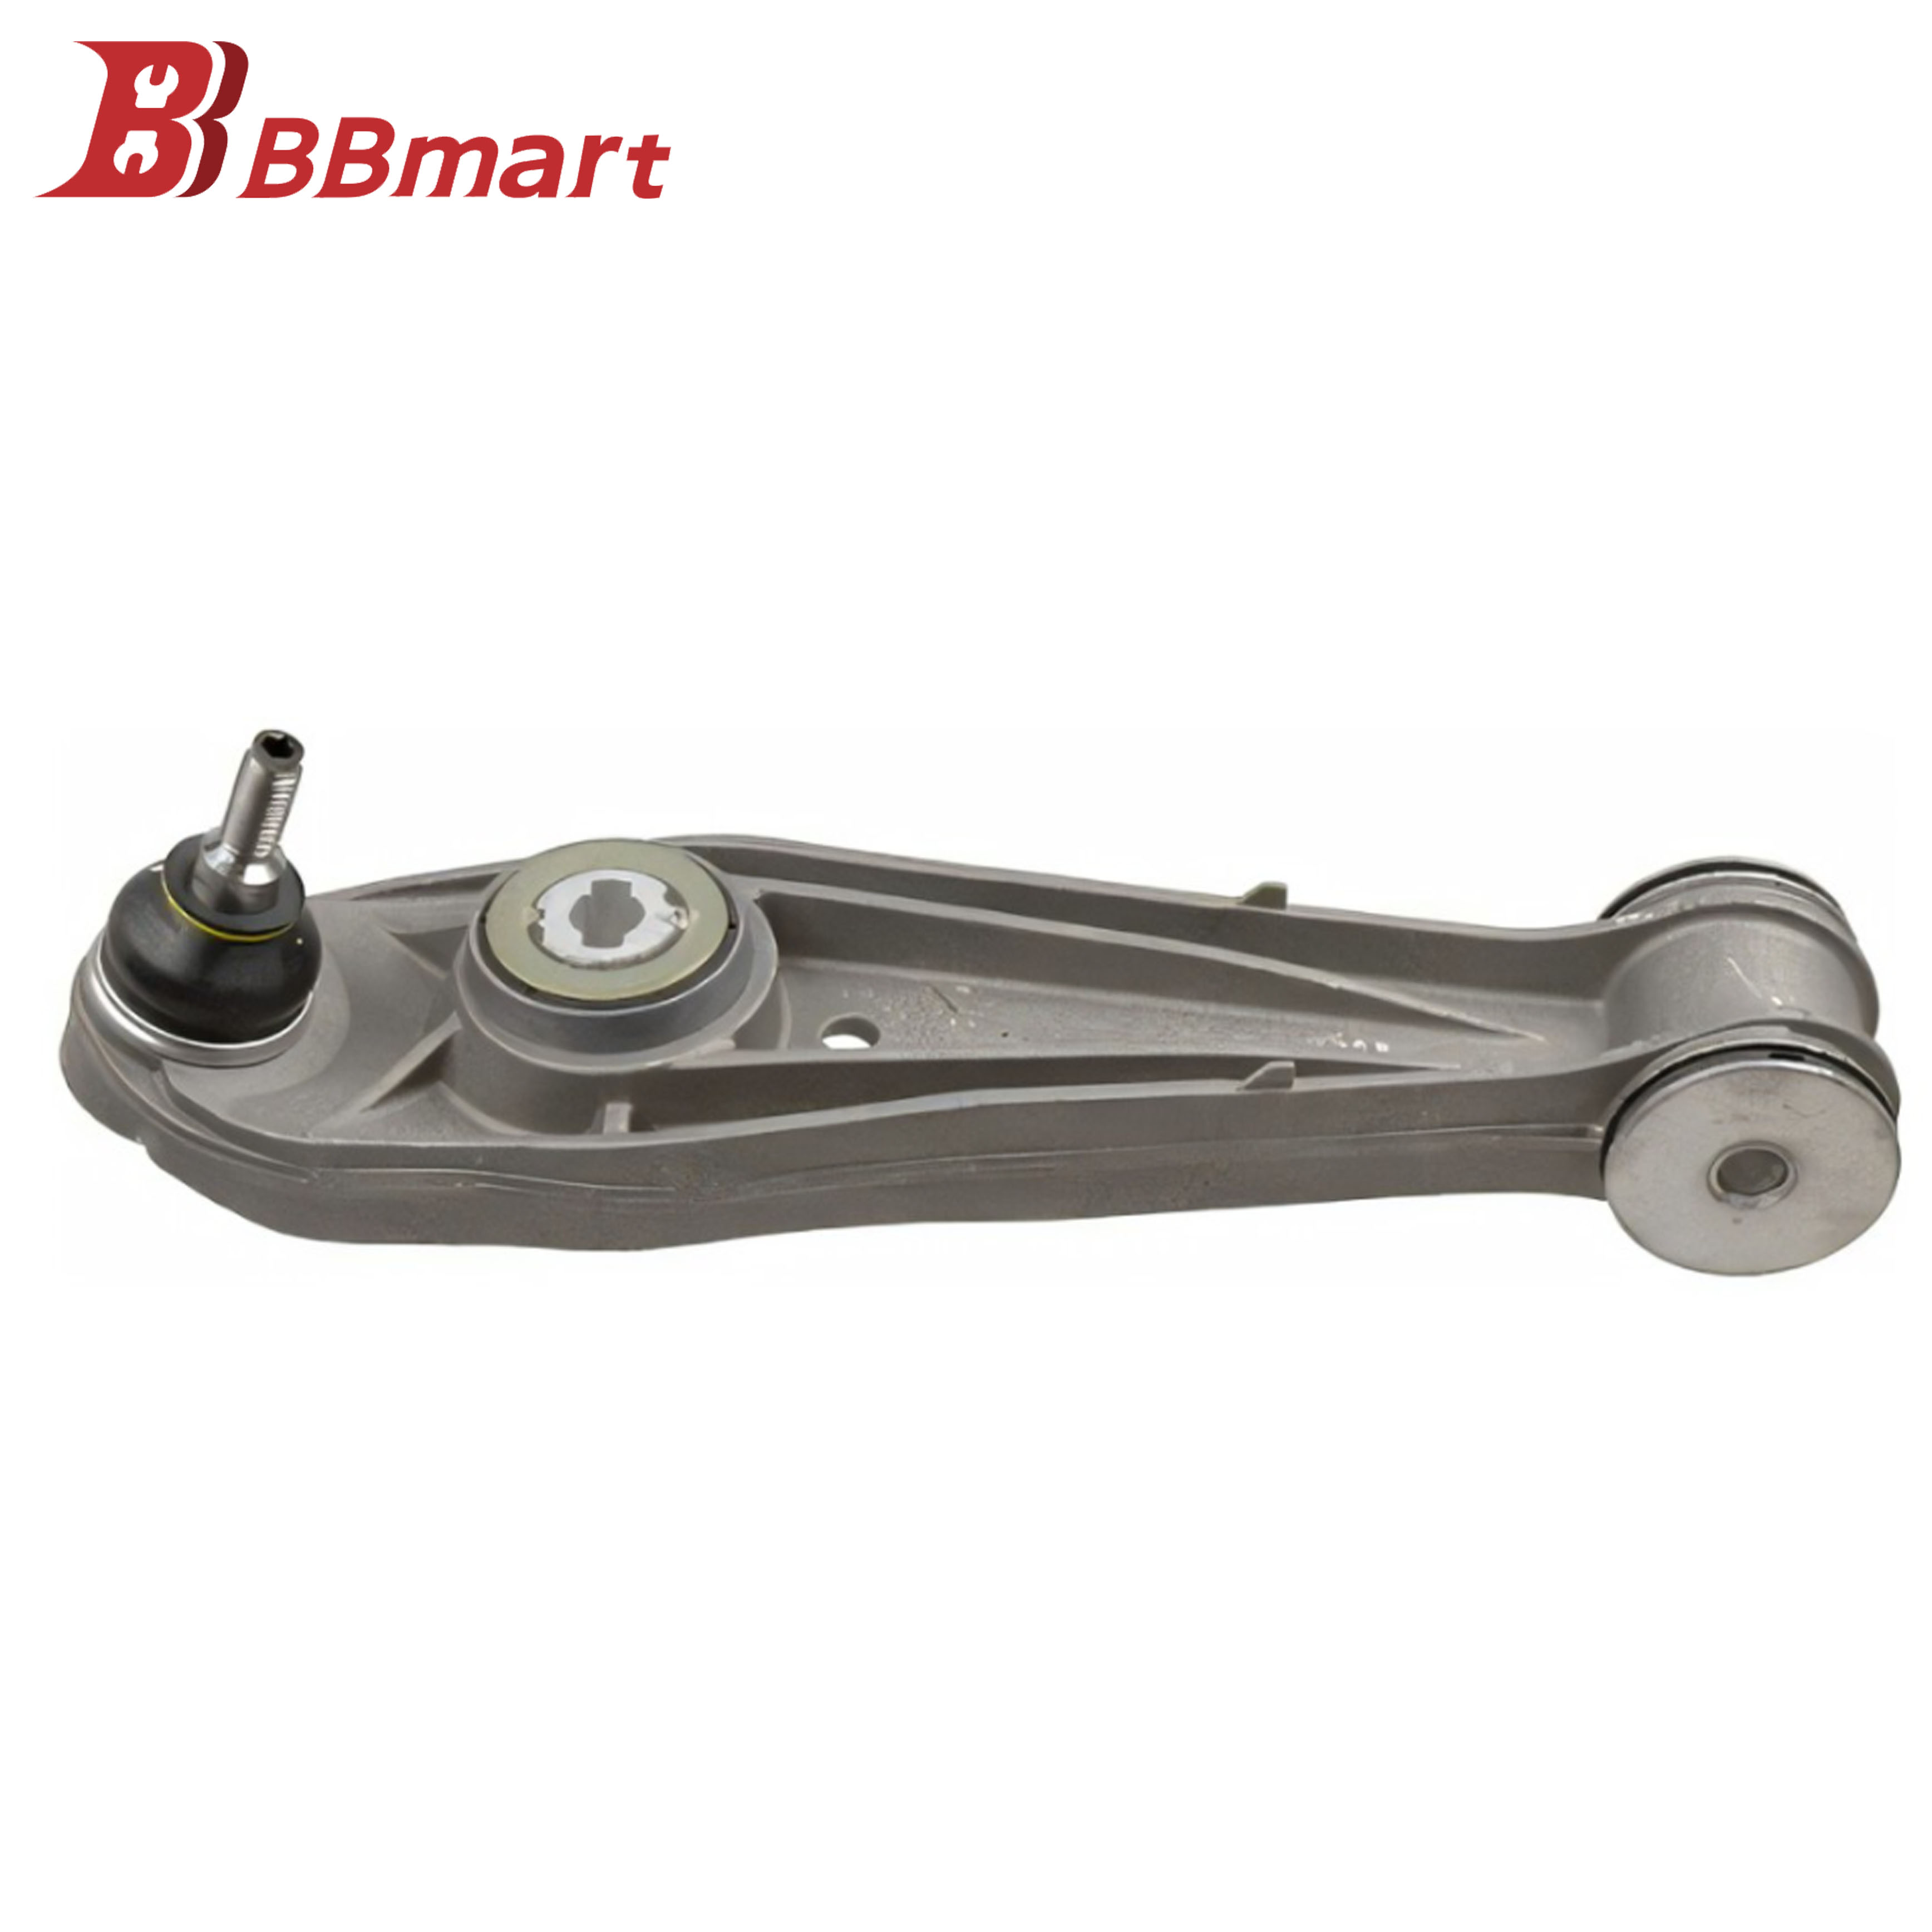 BBmart OEM Auto Spare Car Parts Lower Control Arm 99134105321 For Porsche 911 2011-